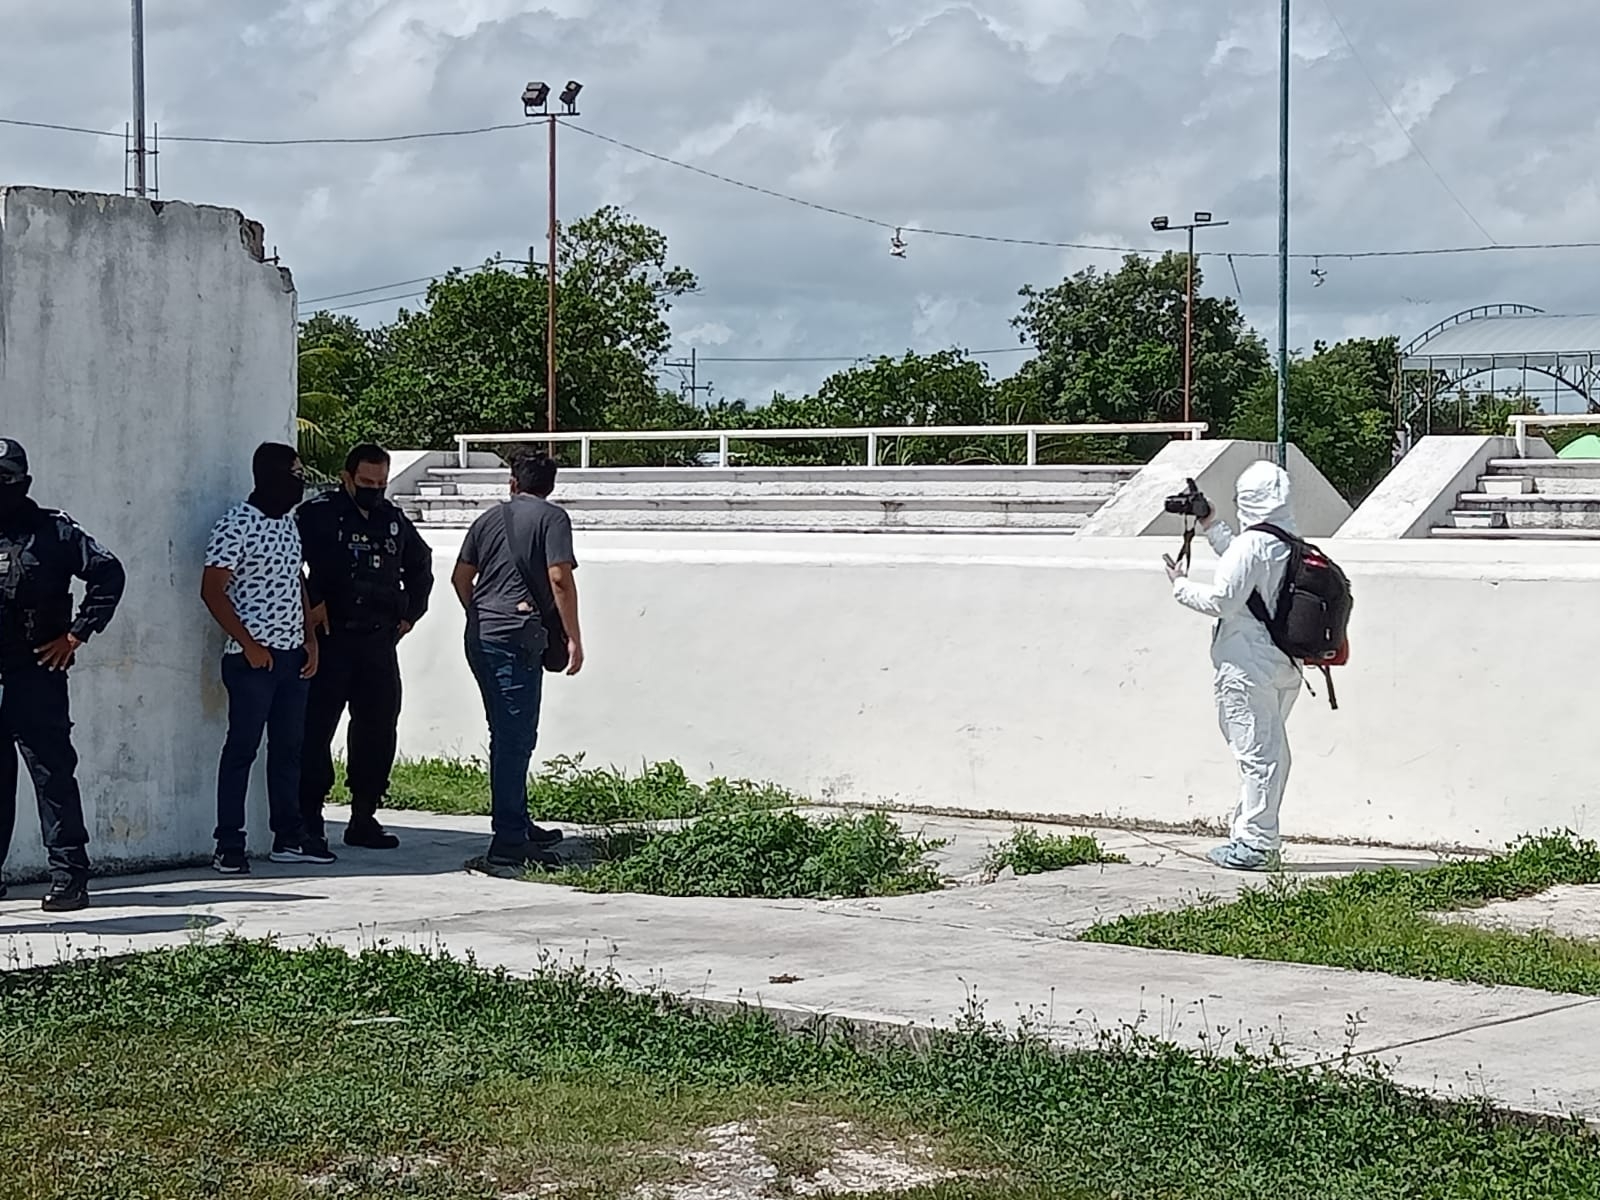 Hallan el cuerpo de un hombre ensabanado en un parque de la Región 234 de Cancún